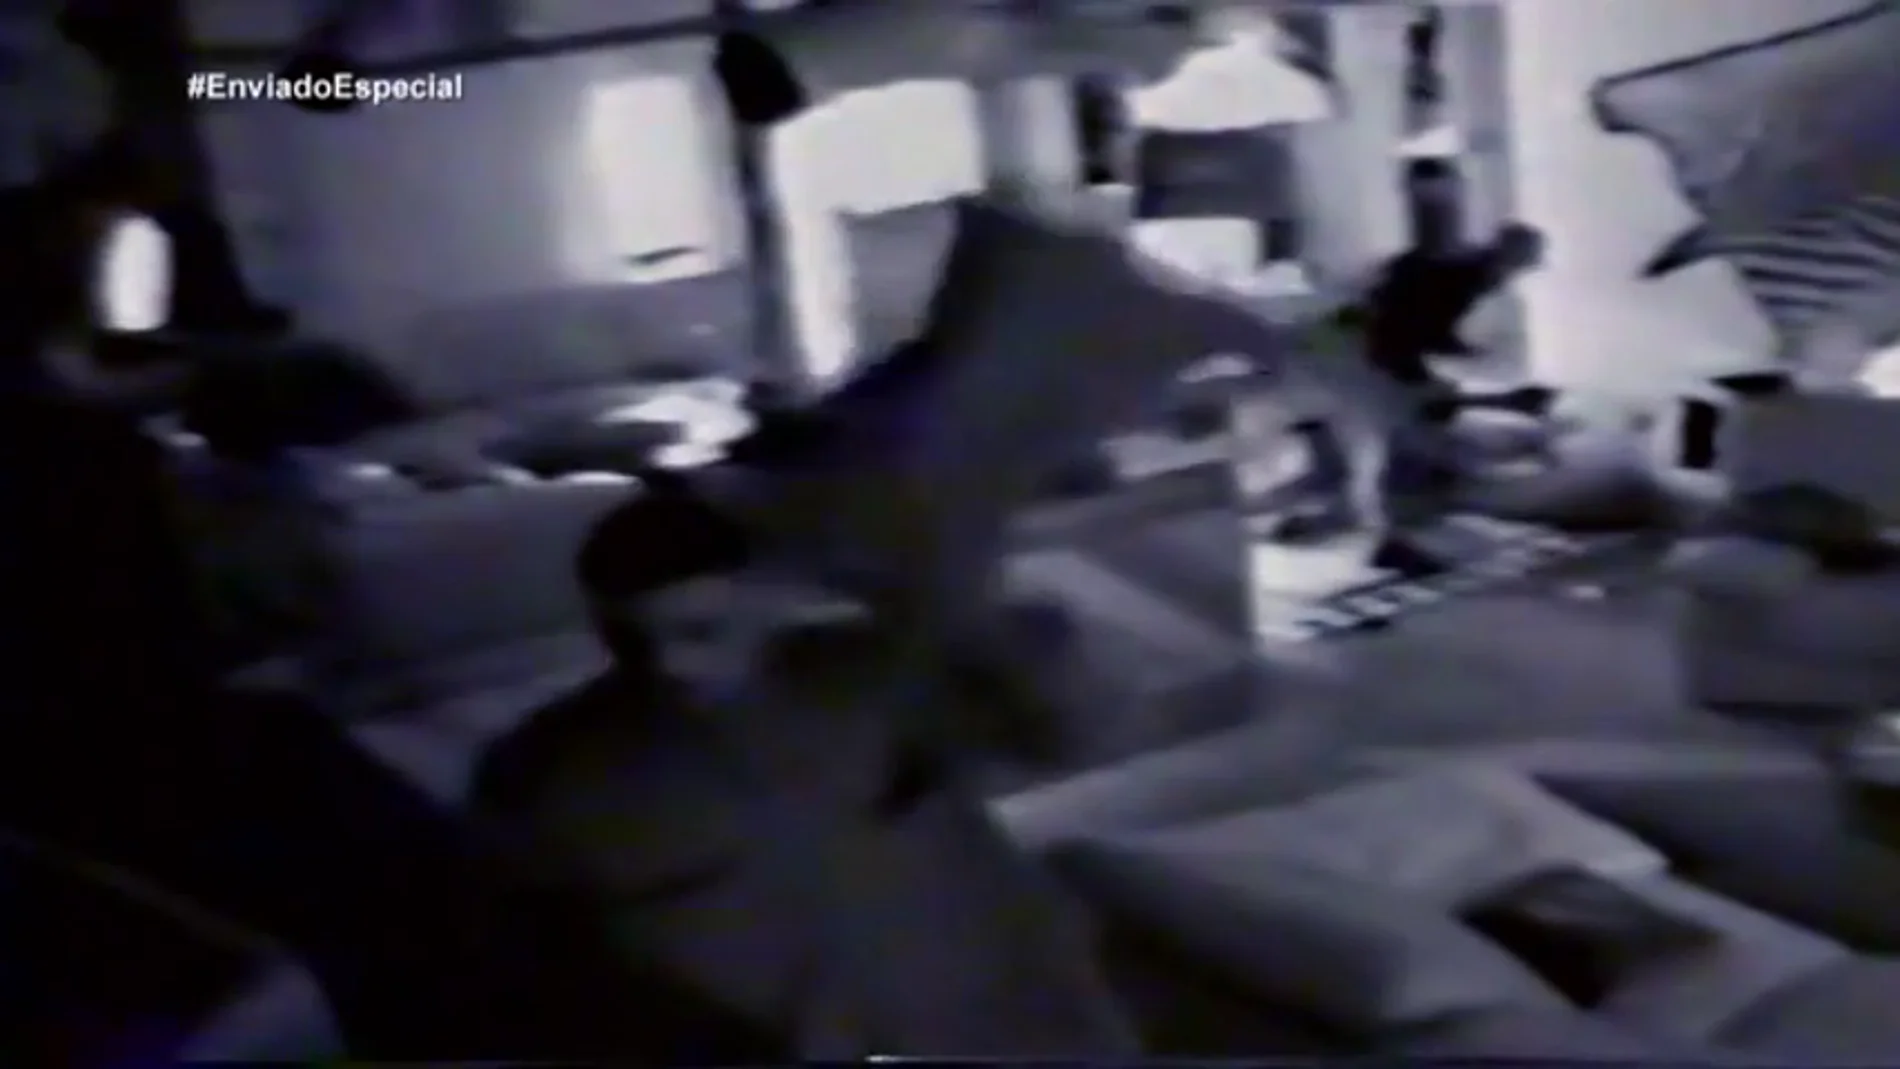 Este es el vídeo que llevó al corredor de la muerte a Pablo Ibar, declarado culpable de tres asesinatos en Estados Unidos